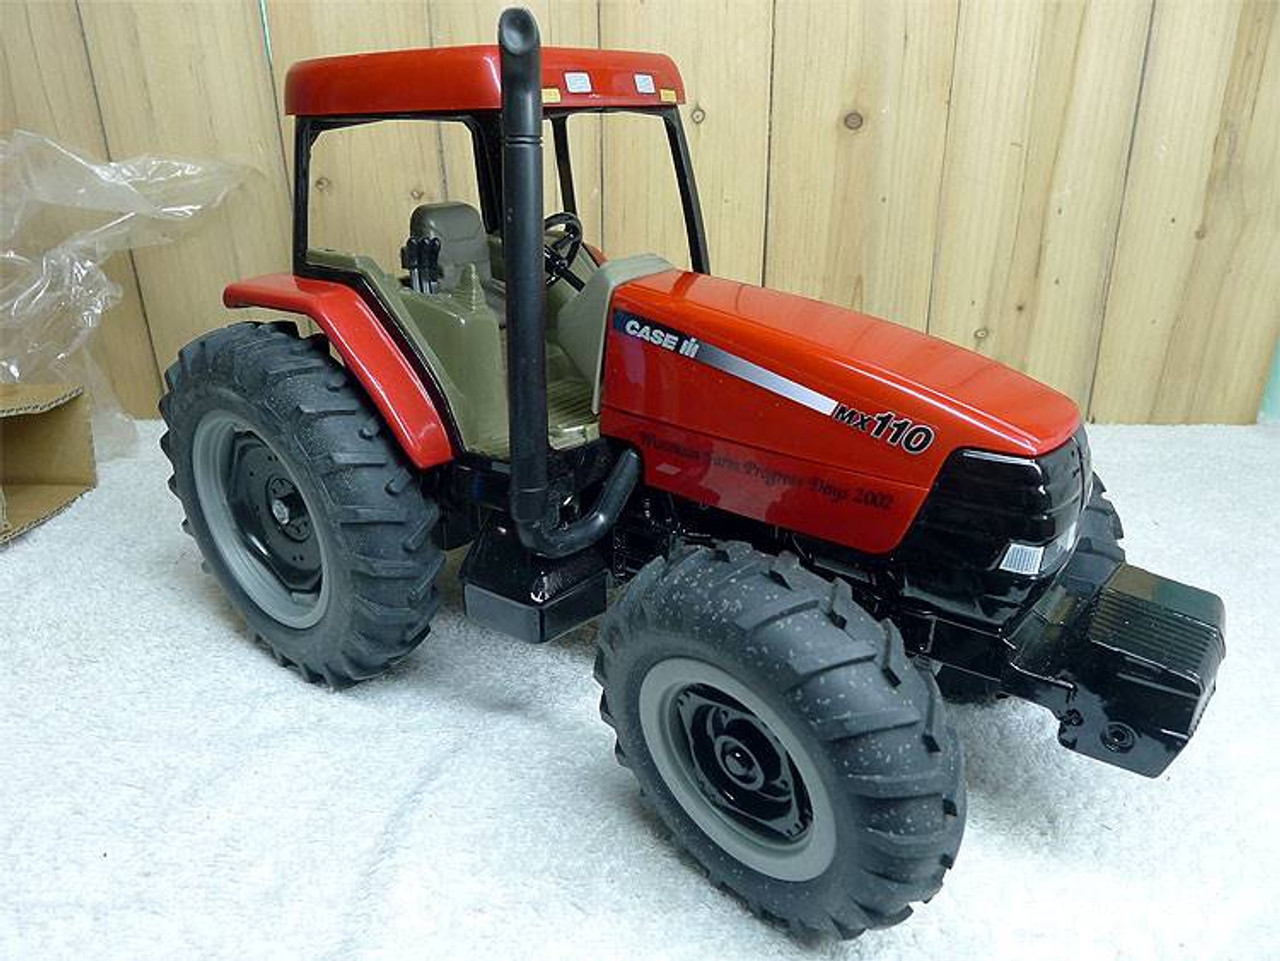 1/16 ERTL Case 110 MX110 Tractor Tractor Diecast Model